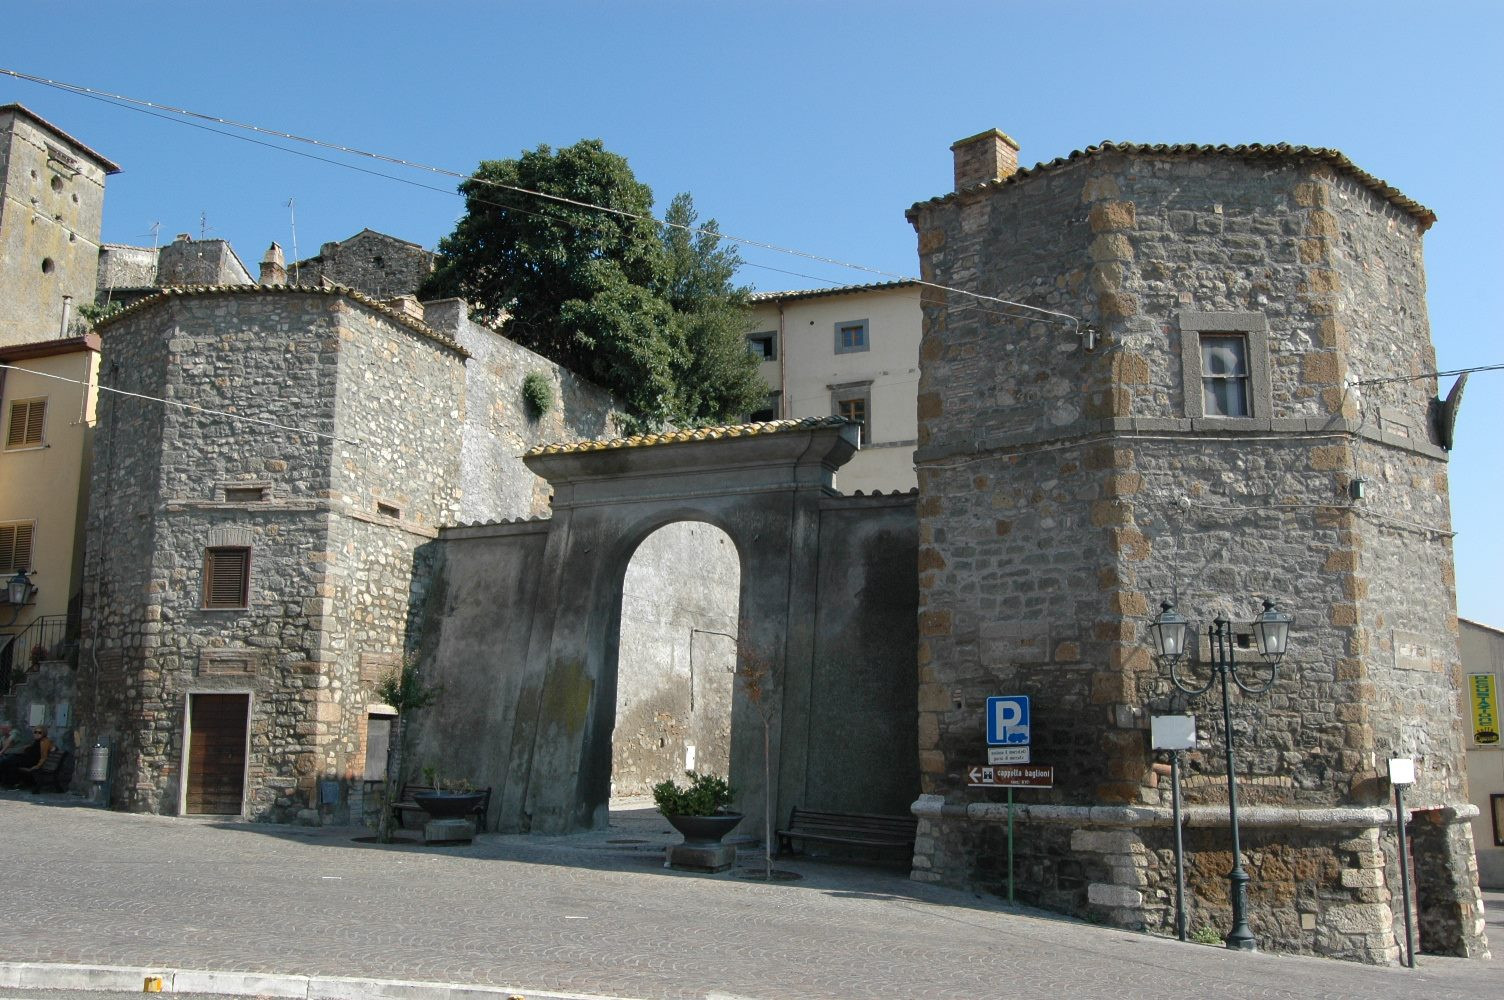 Municipality of Graffignano